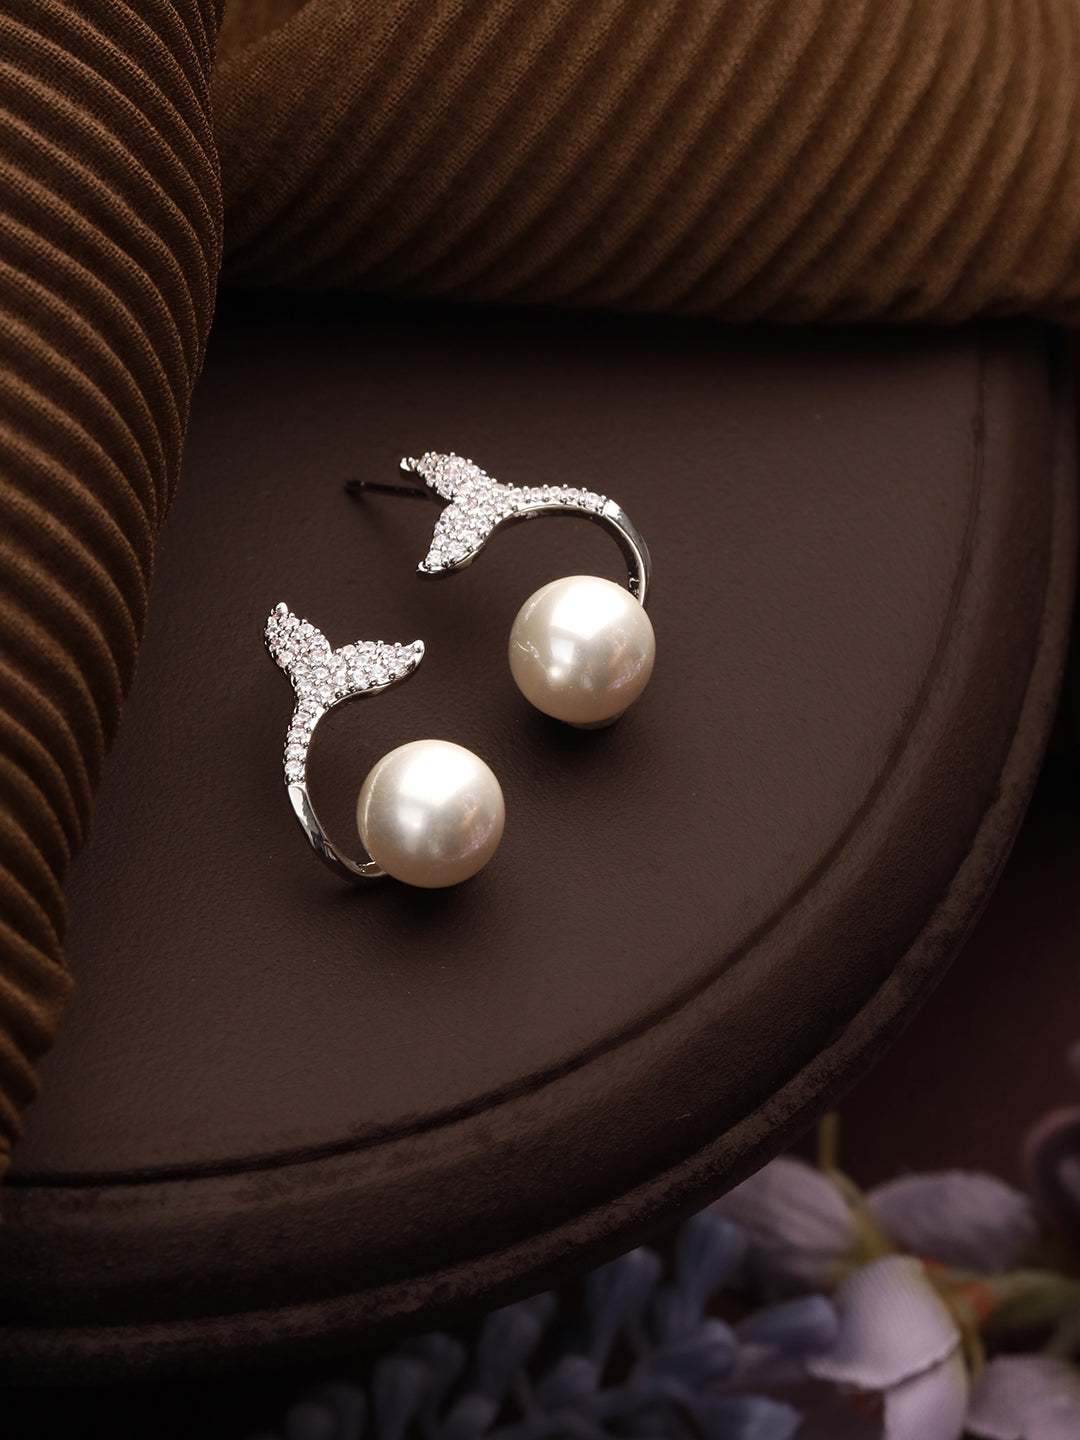 Priyaasi Mermaid Pearl American Diamond Silver-Plated Stud Earrings